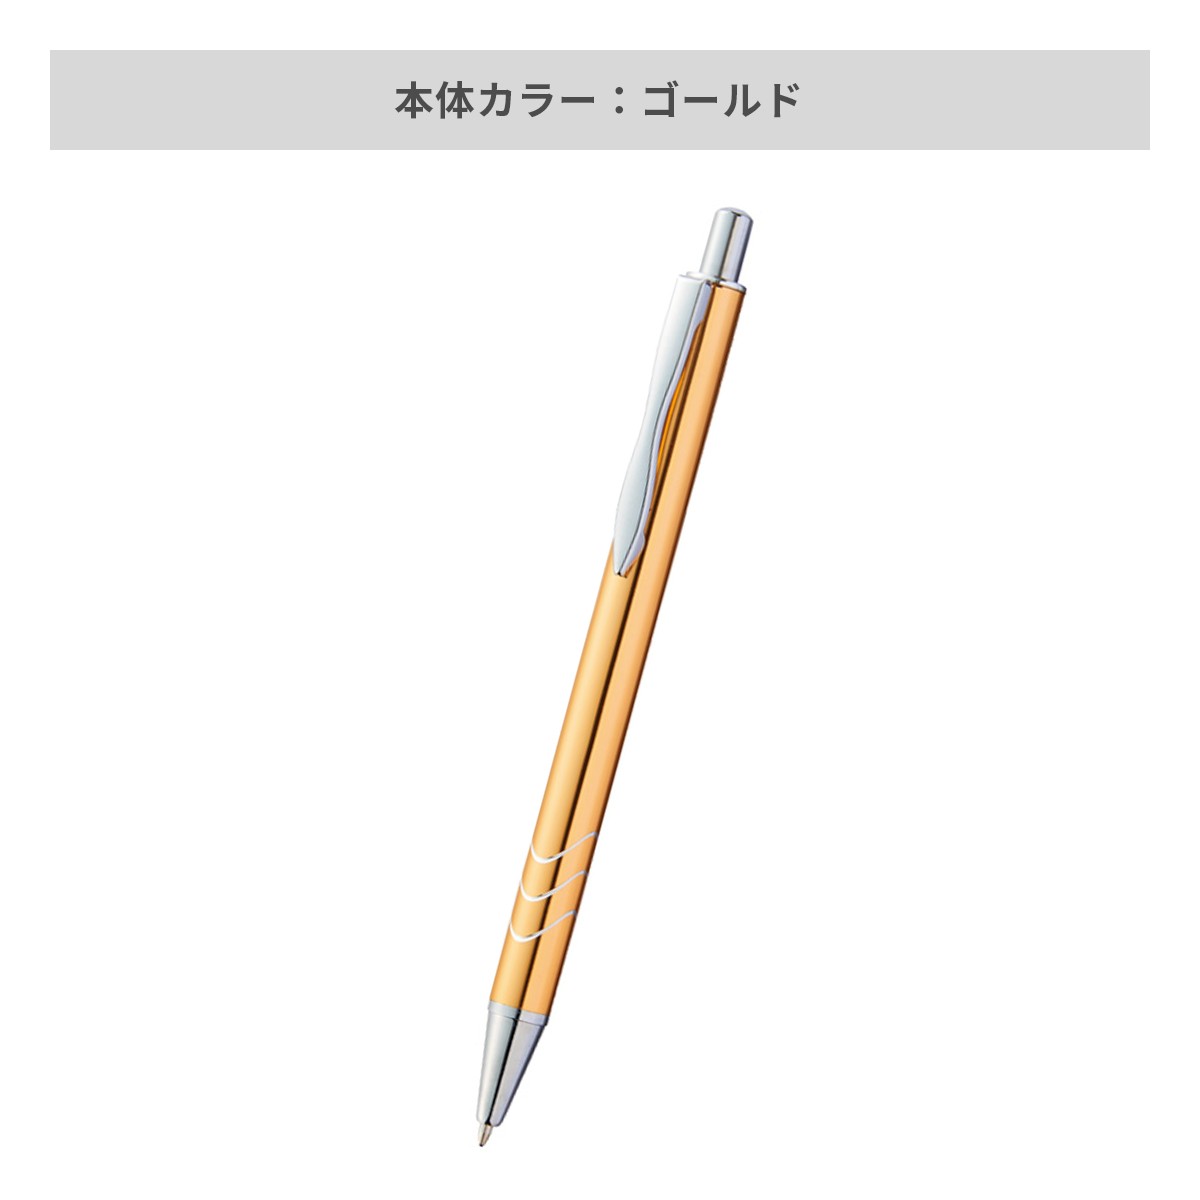 メタルライン ボールペン【名入れボールペン / パッド印刷】 画像5